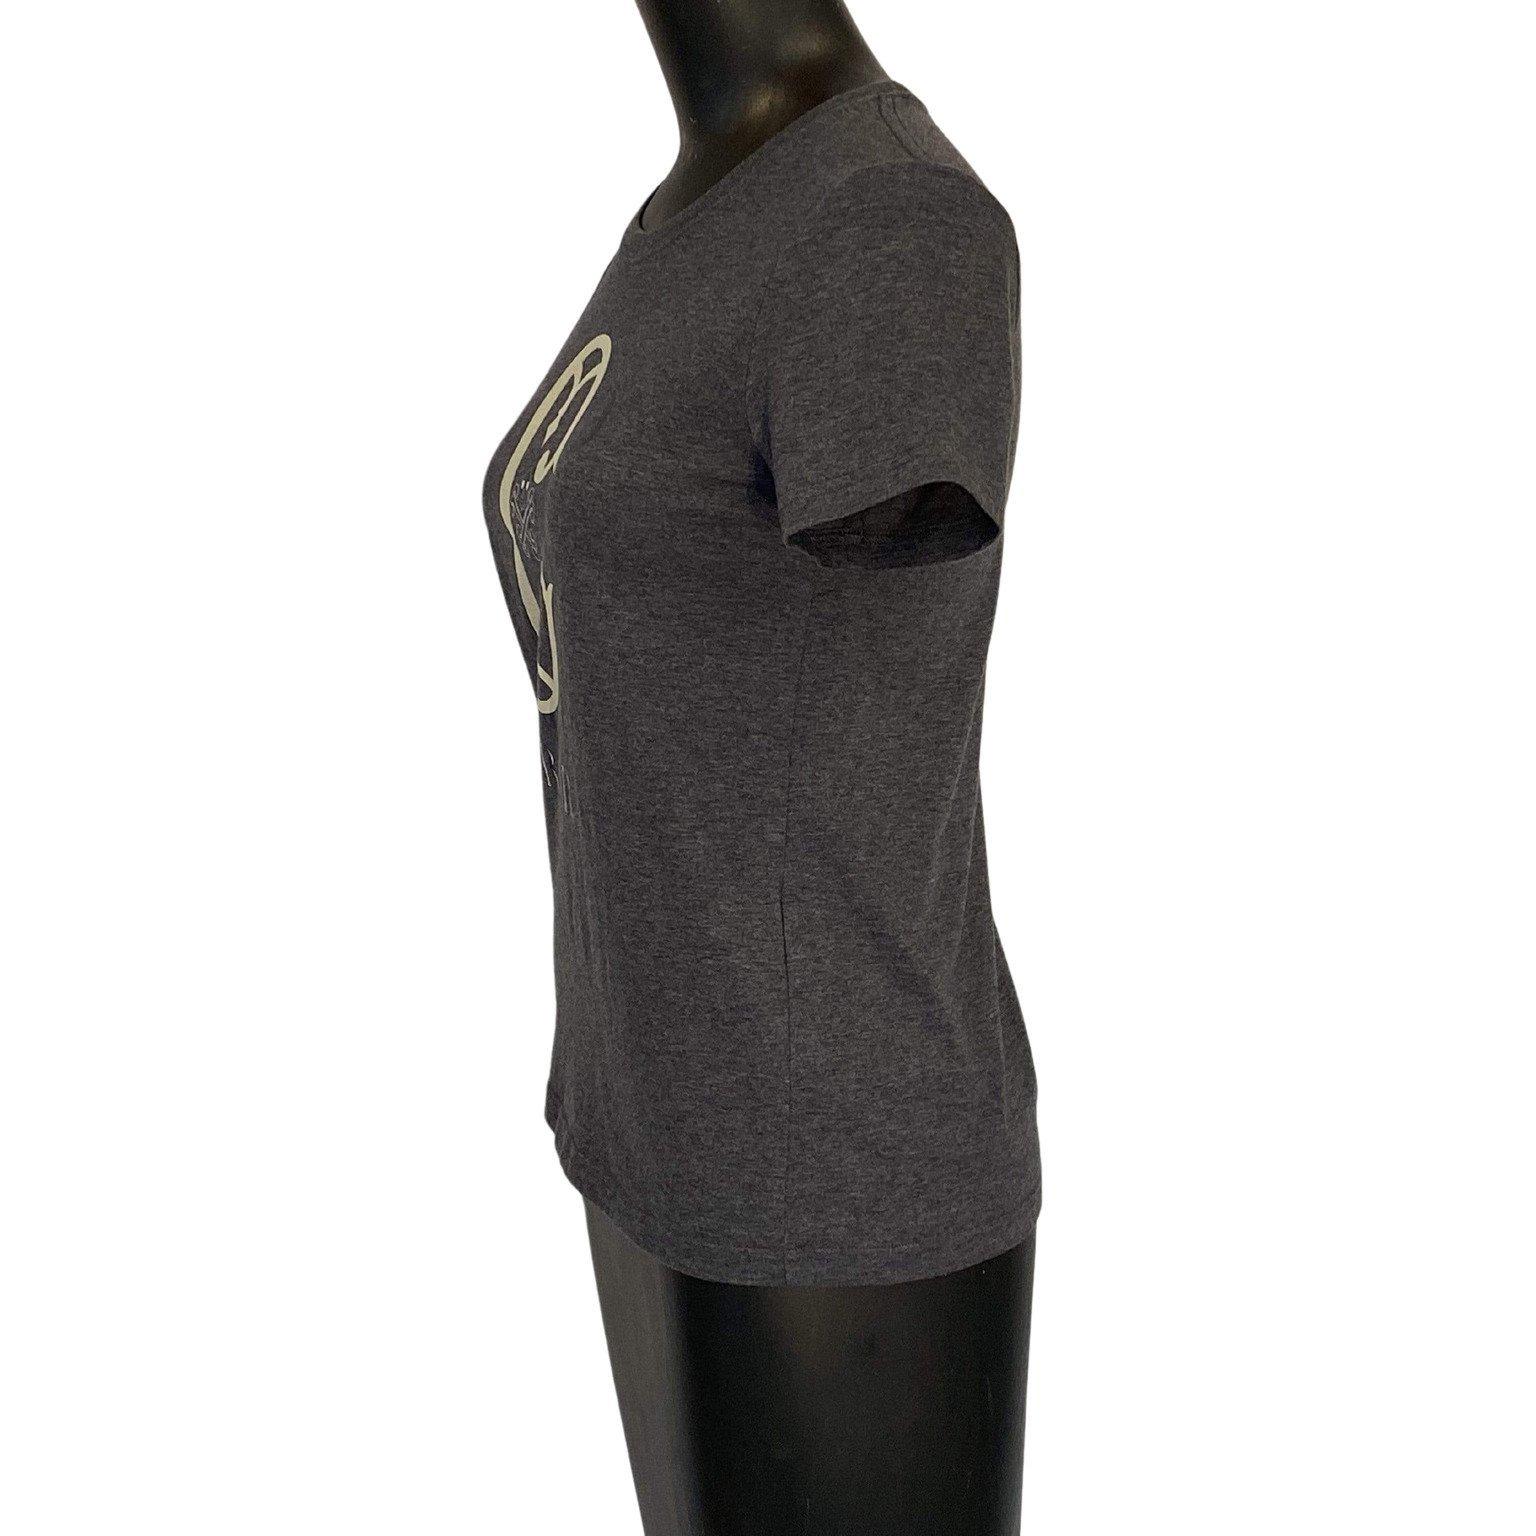 Top vintage Undercover semi-ajusté 100% coton. Ce tee-shirt basique gris anthracite porte le logo 